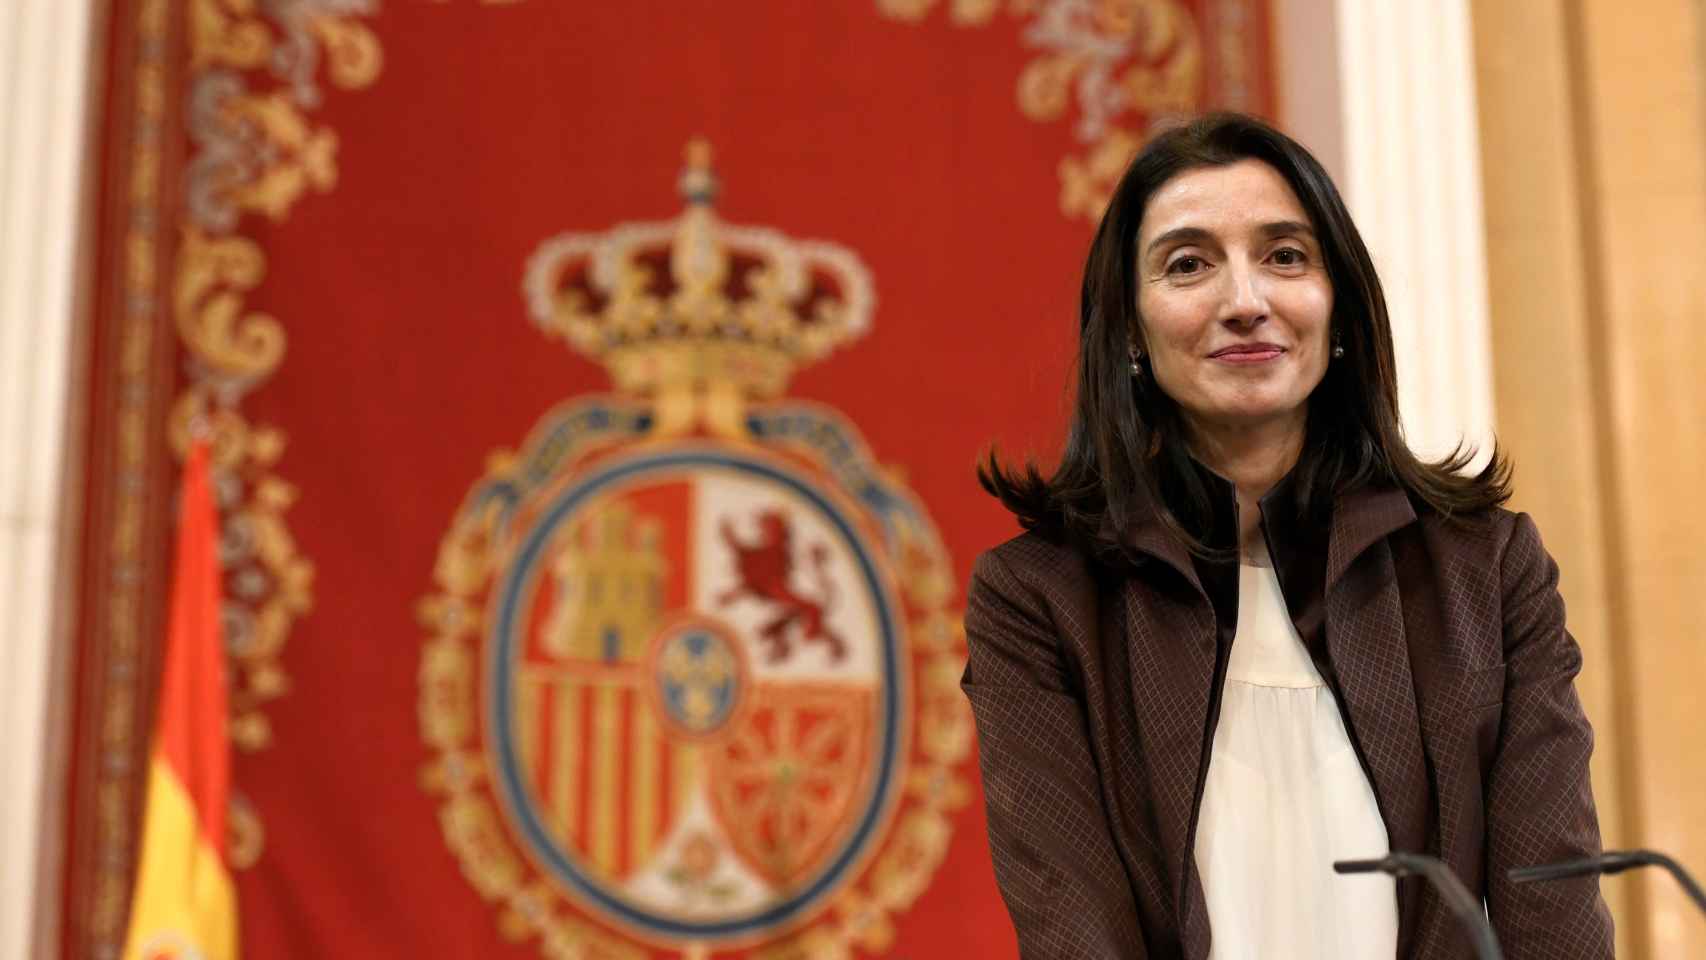 Pilar Llop, nueva ministra de Justicia.